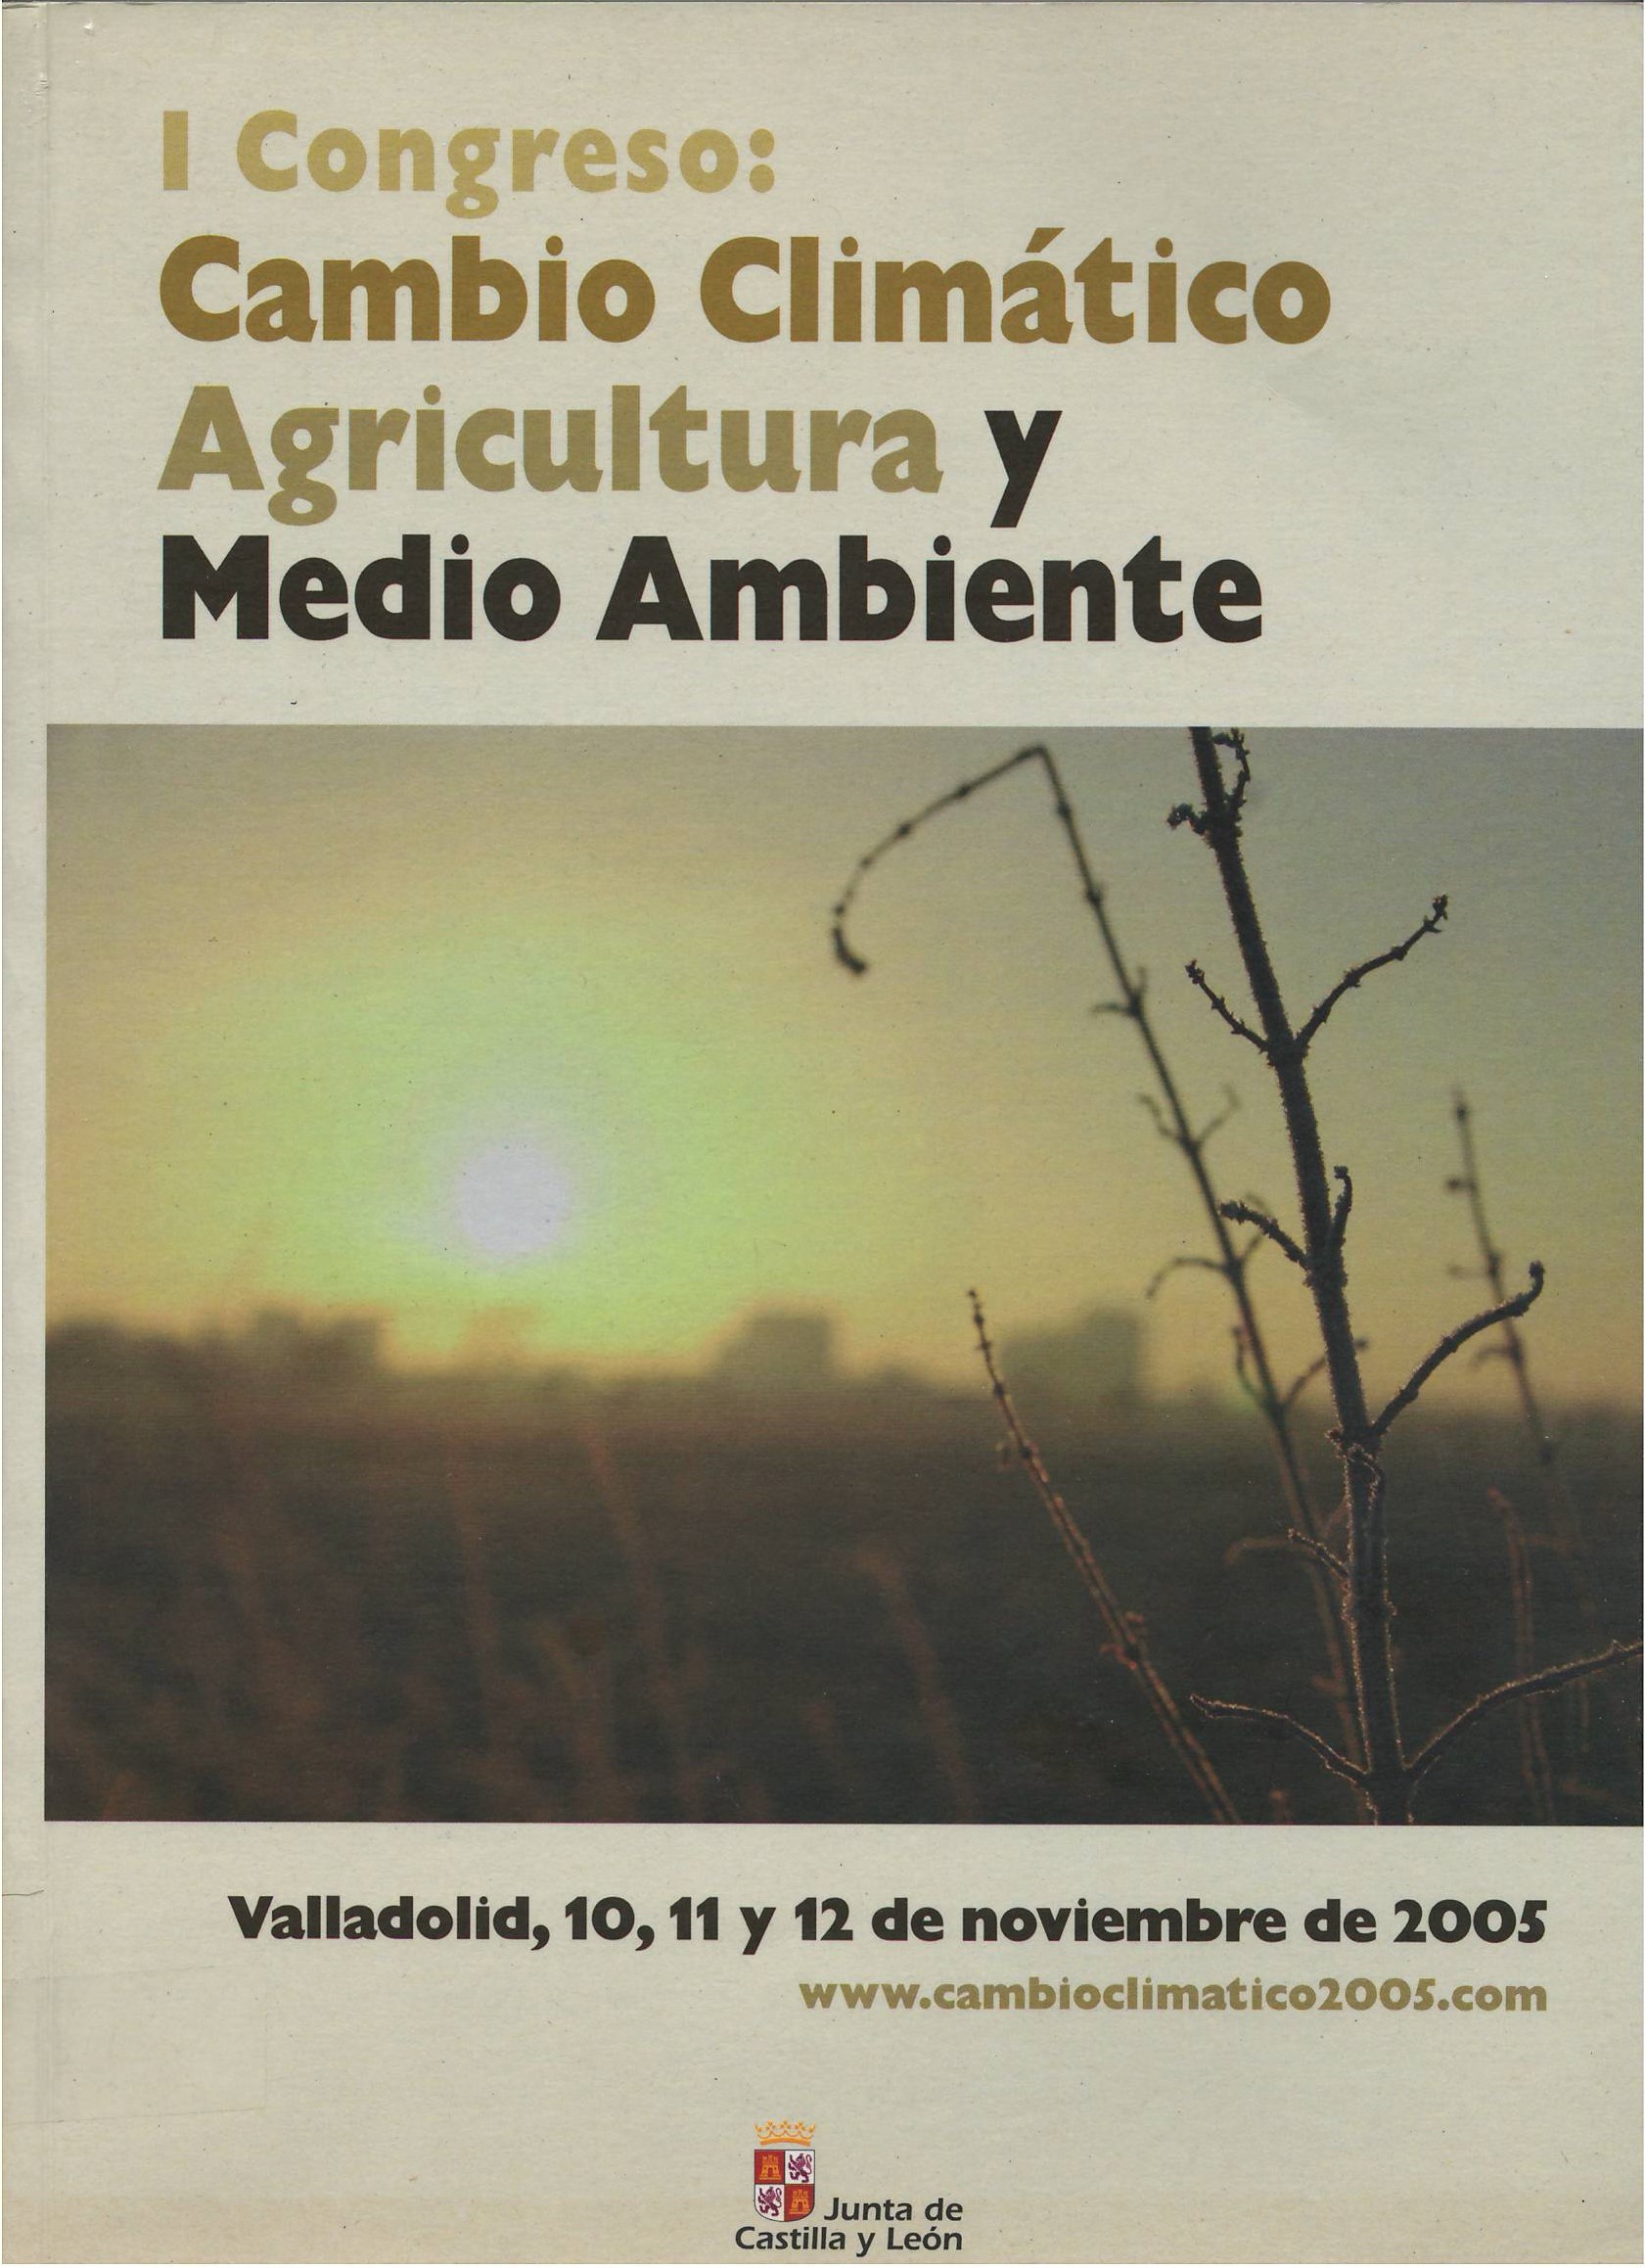 Imagen de portada del libro I Congreso: Cambio Climático, Agricultura y Medio Ambiente